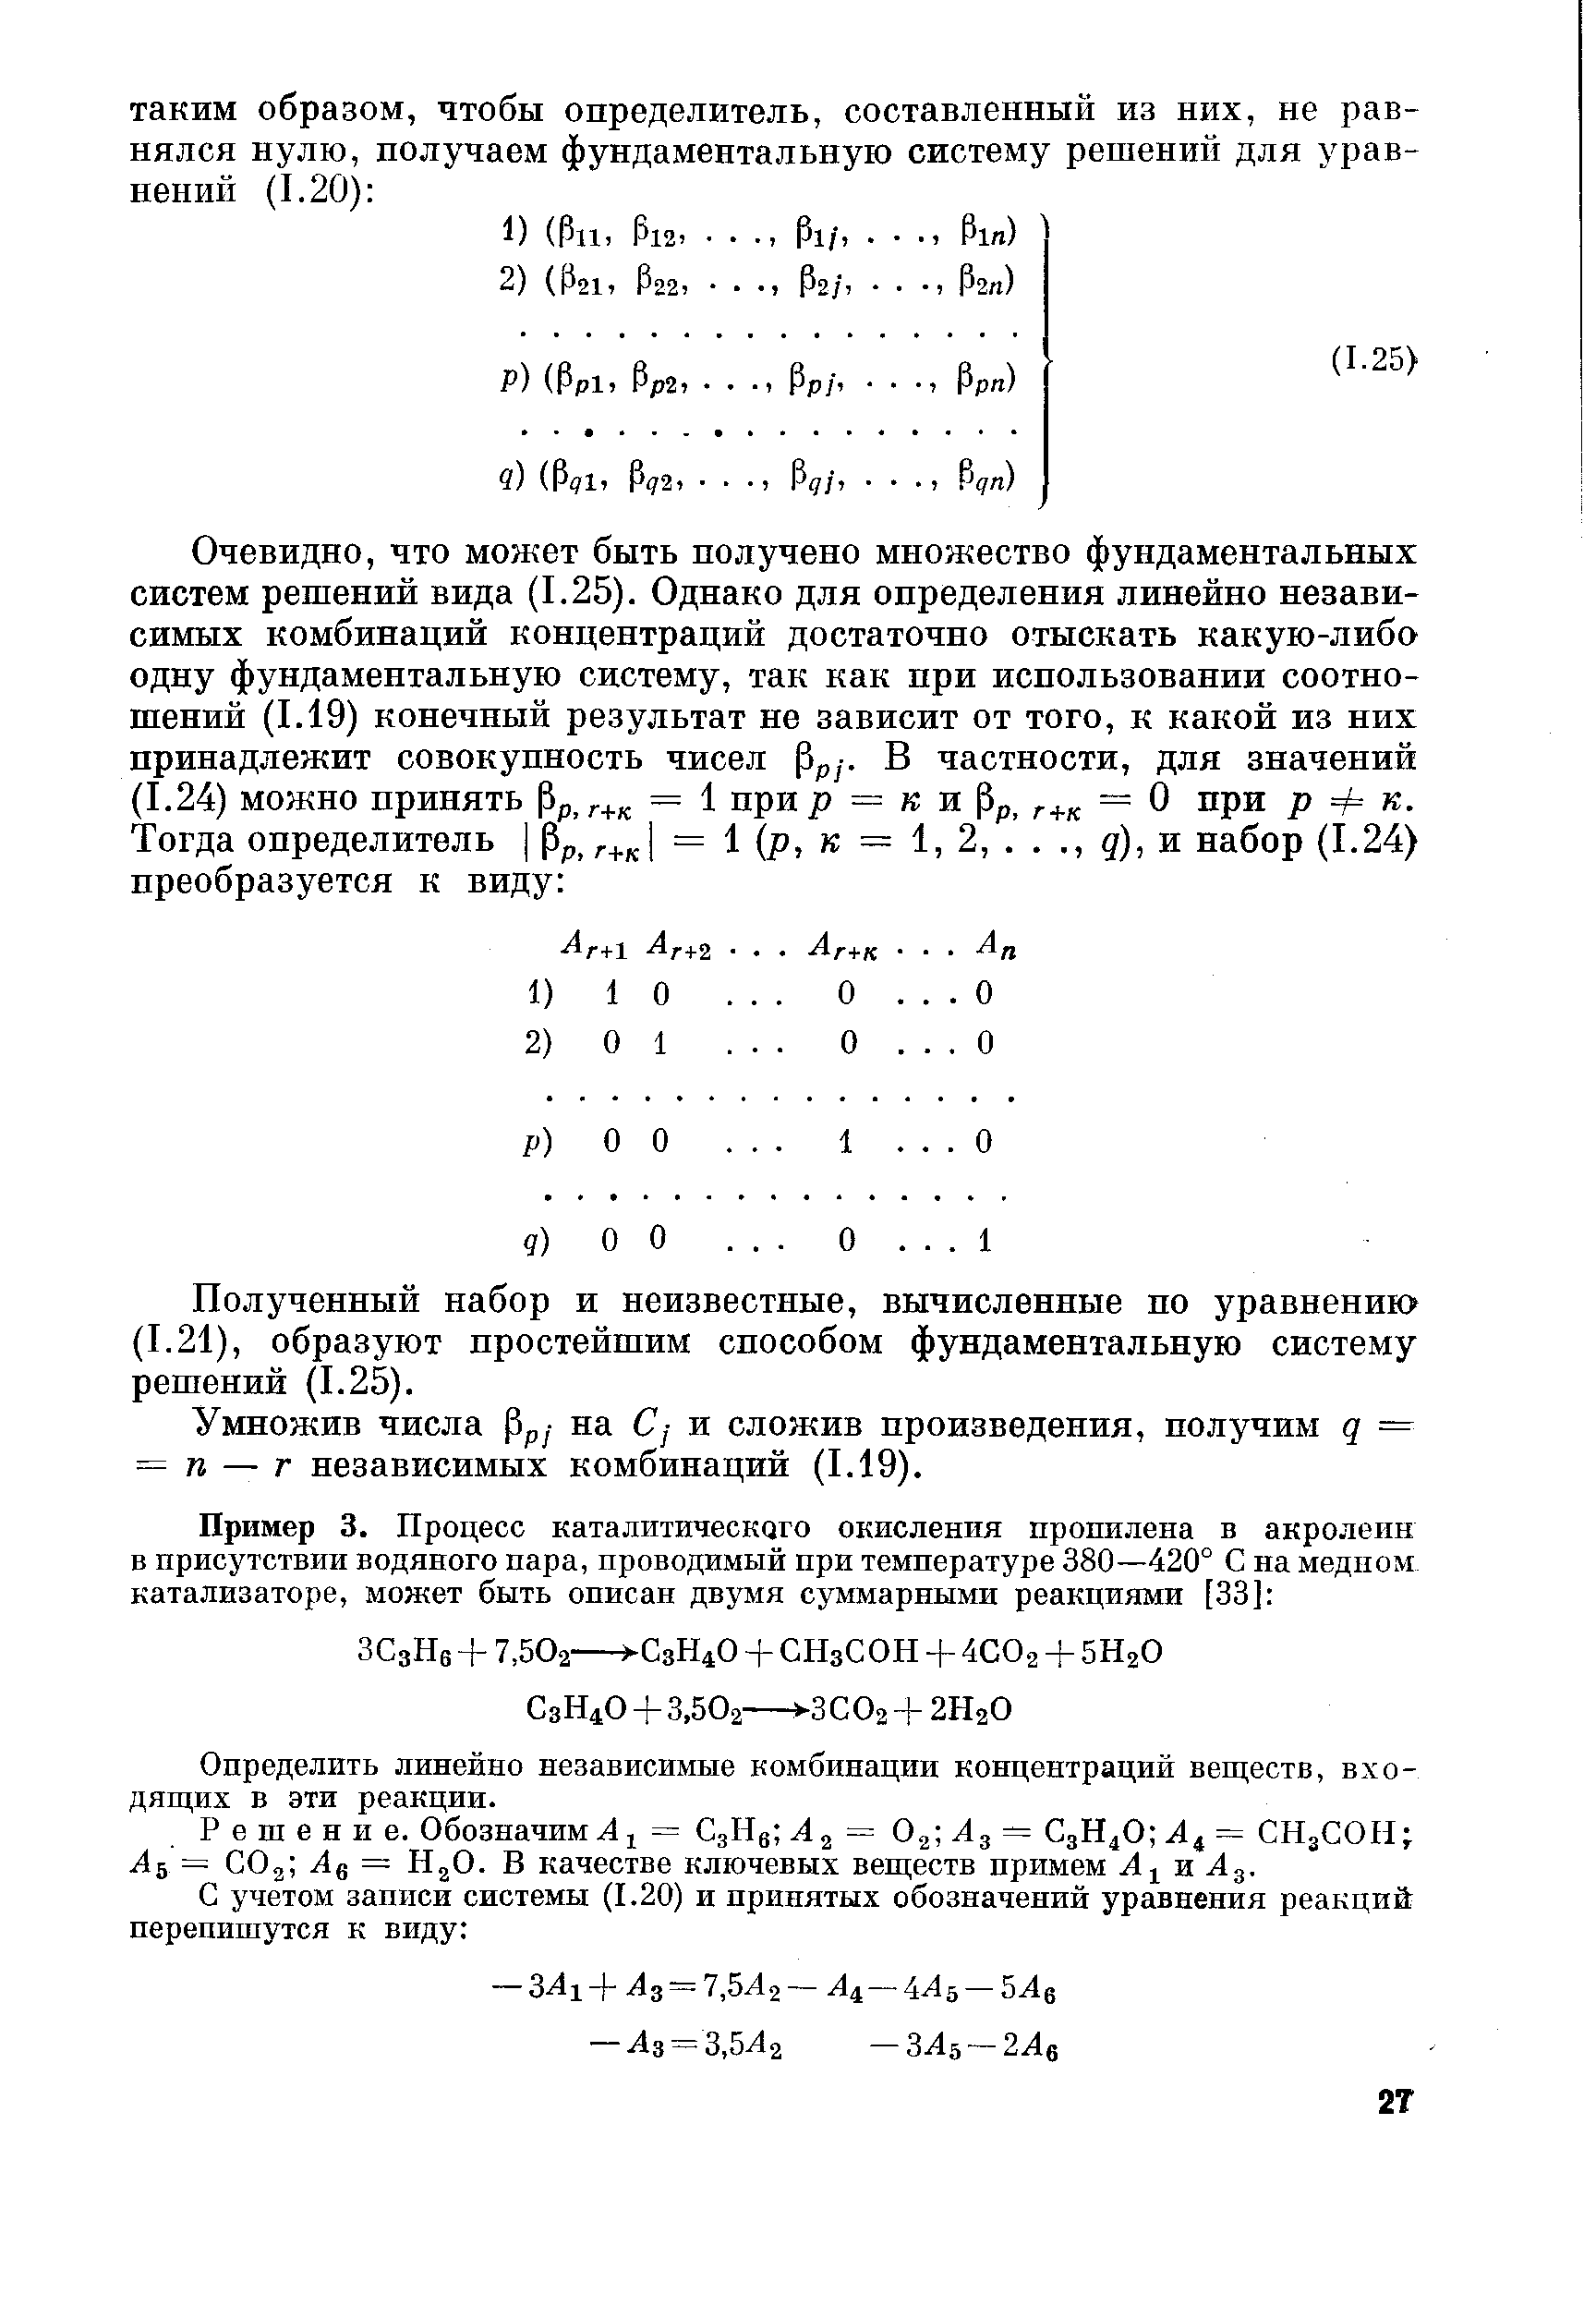 Полученный набор и неизвестные, вычисленные по уравнению (1.21), образуют простейшим способом фундаментальную систему решений (1.25).